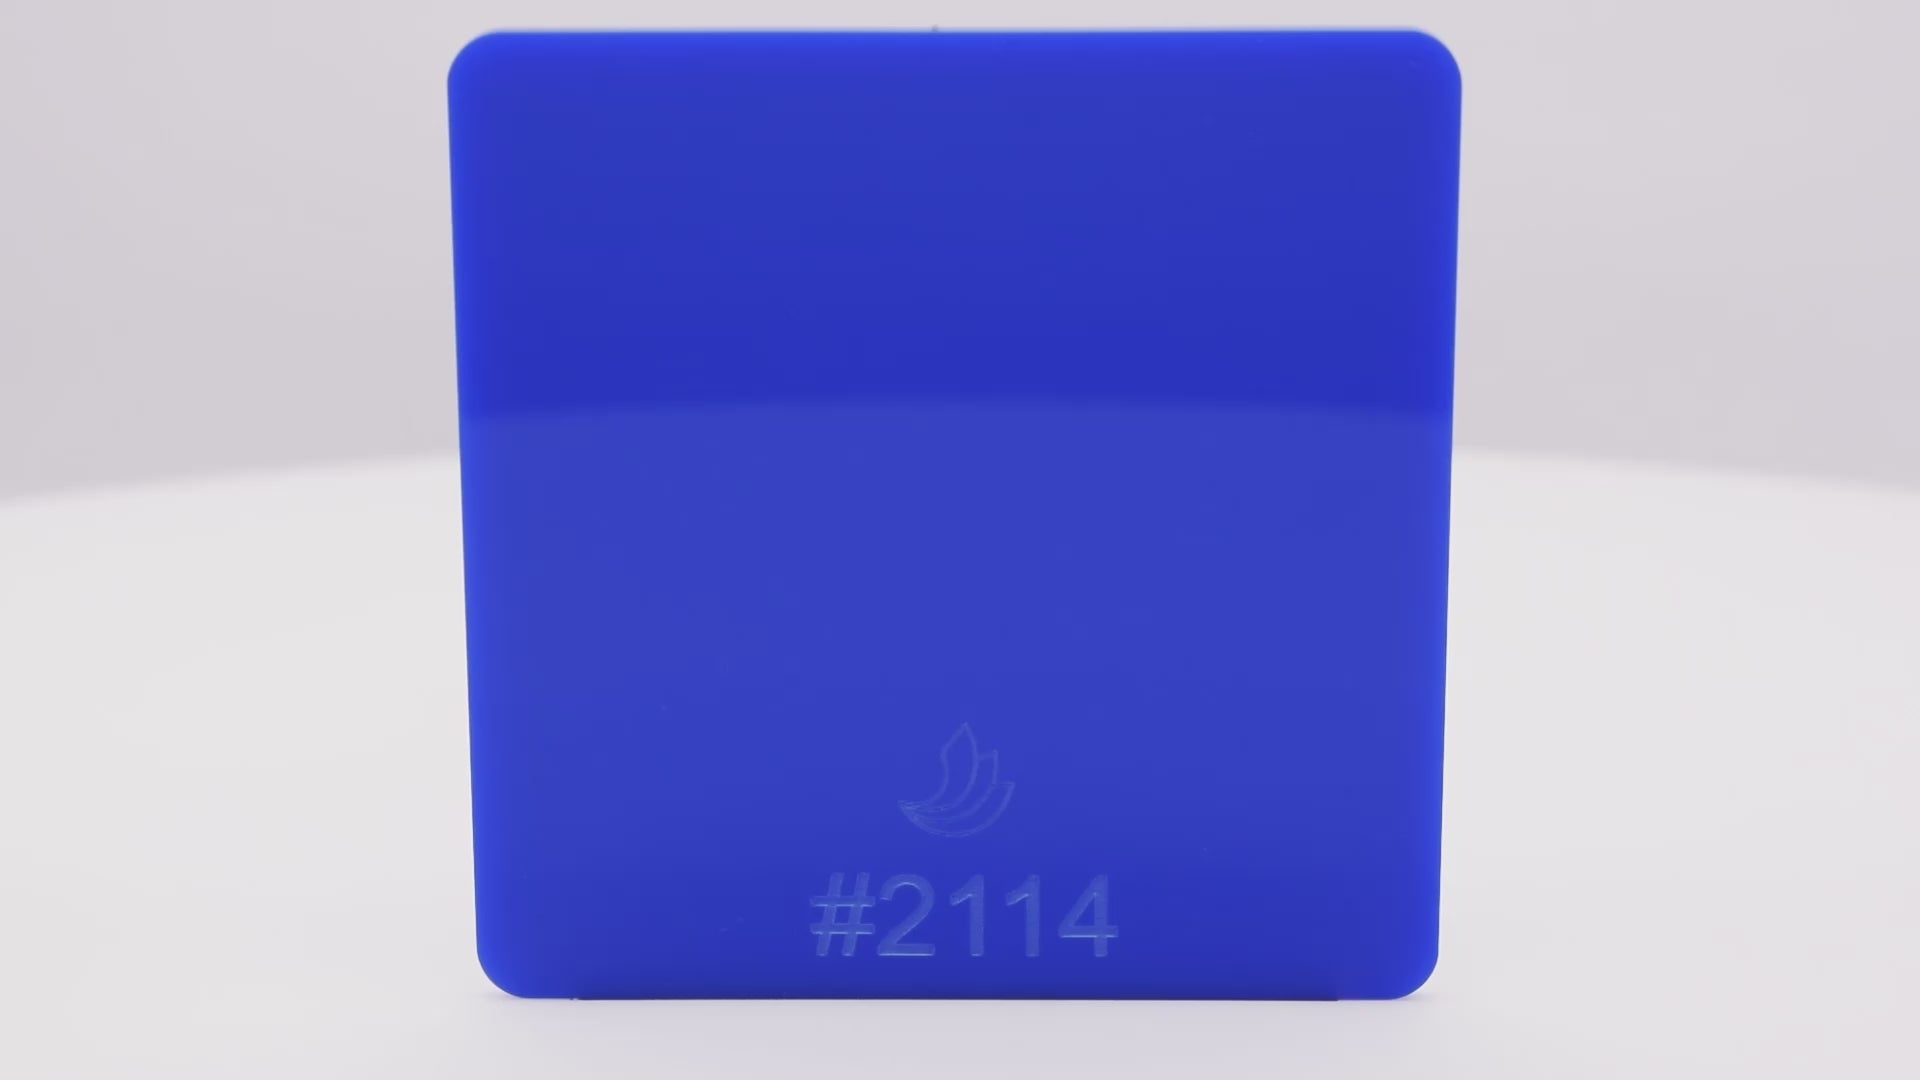 1/8" Blue Translucent #2114 Acrylic Sheet